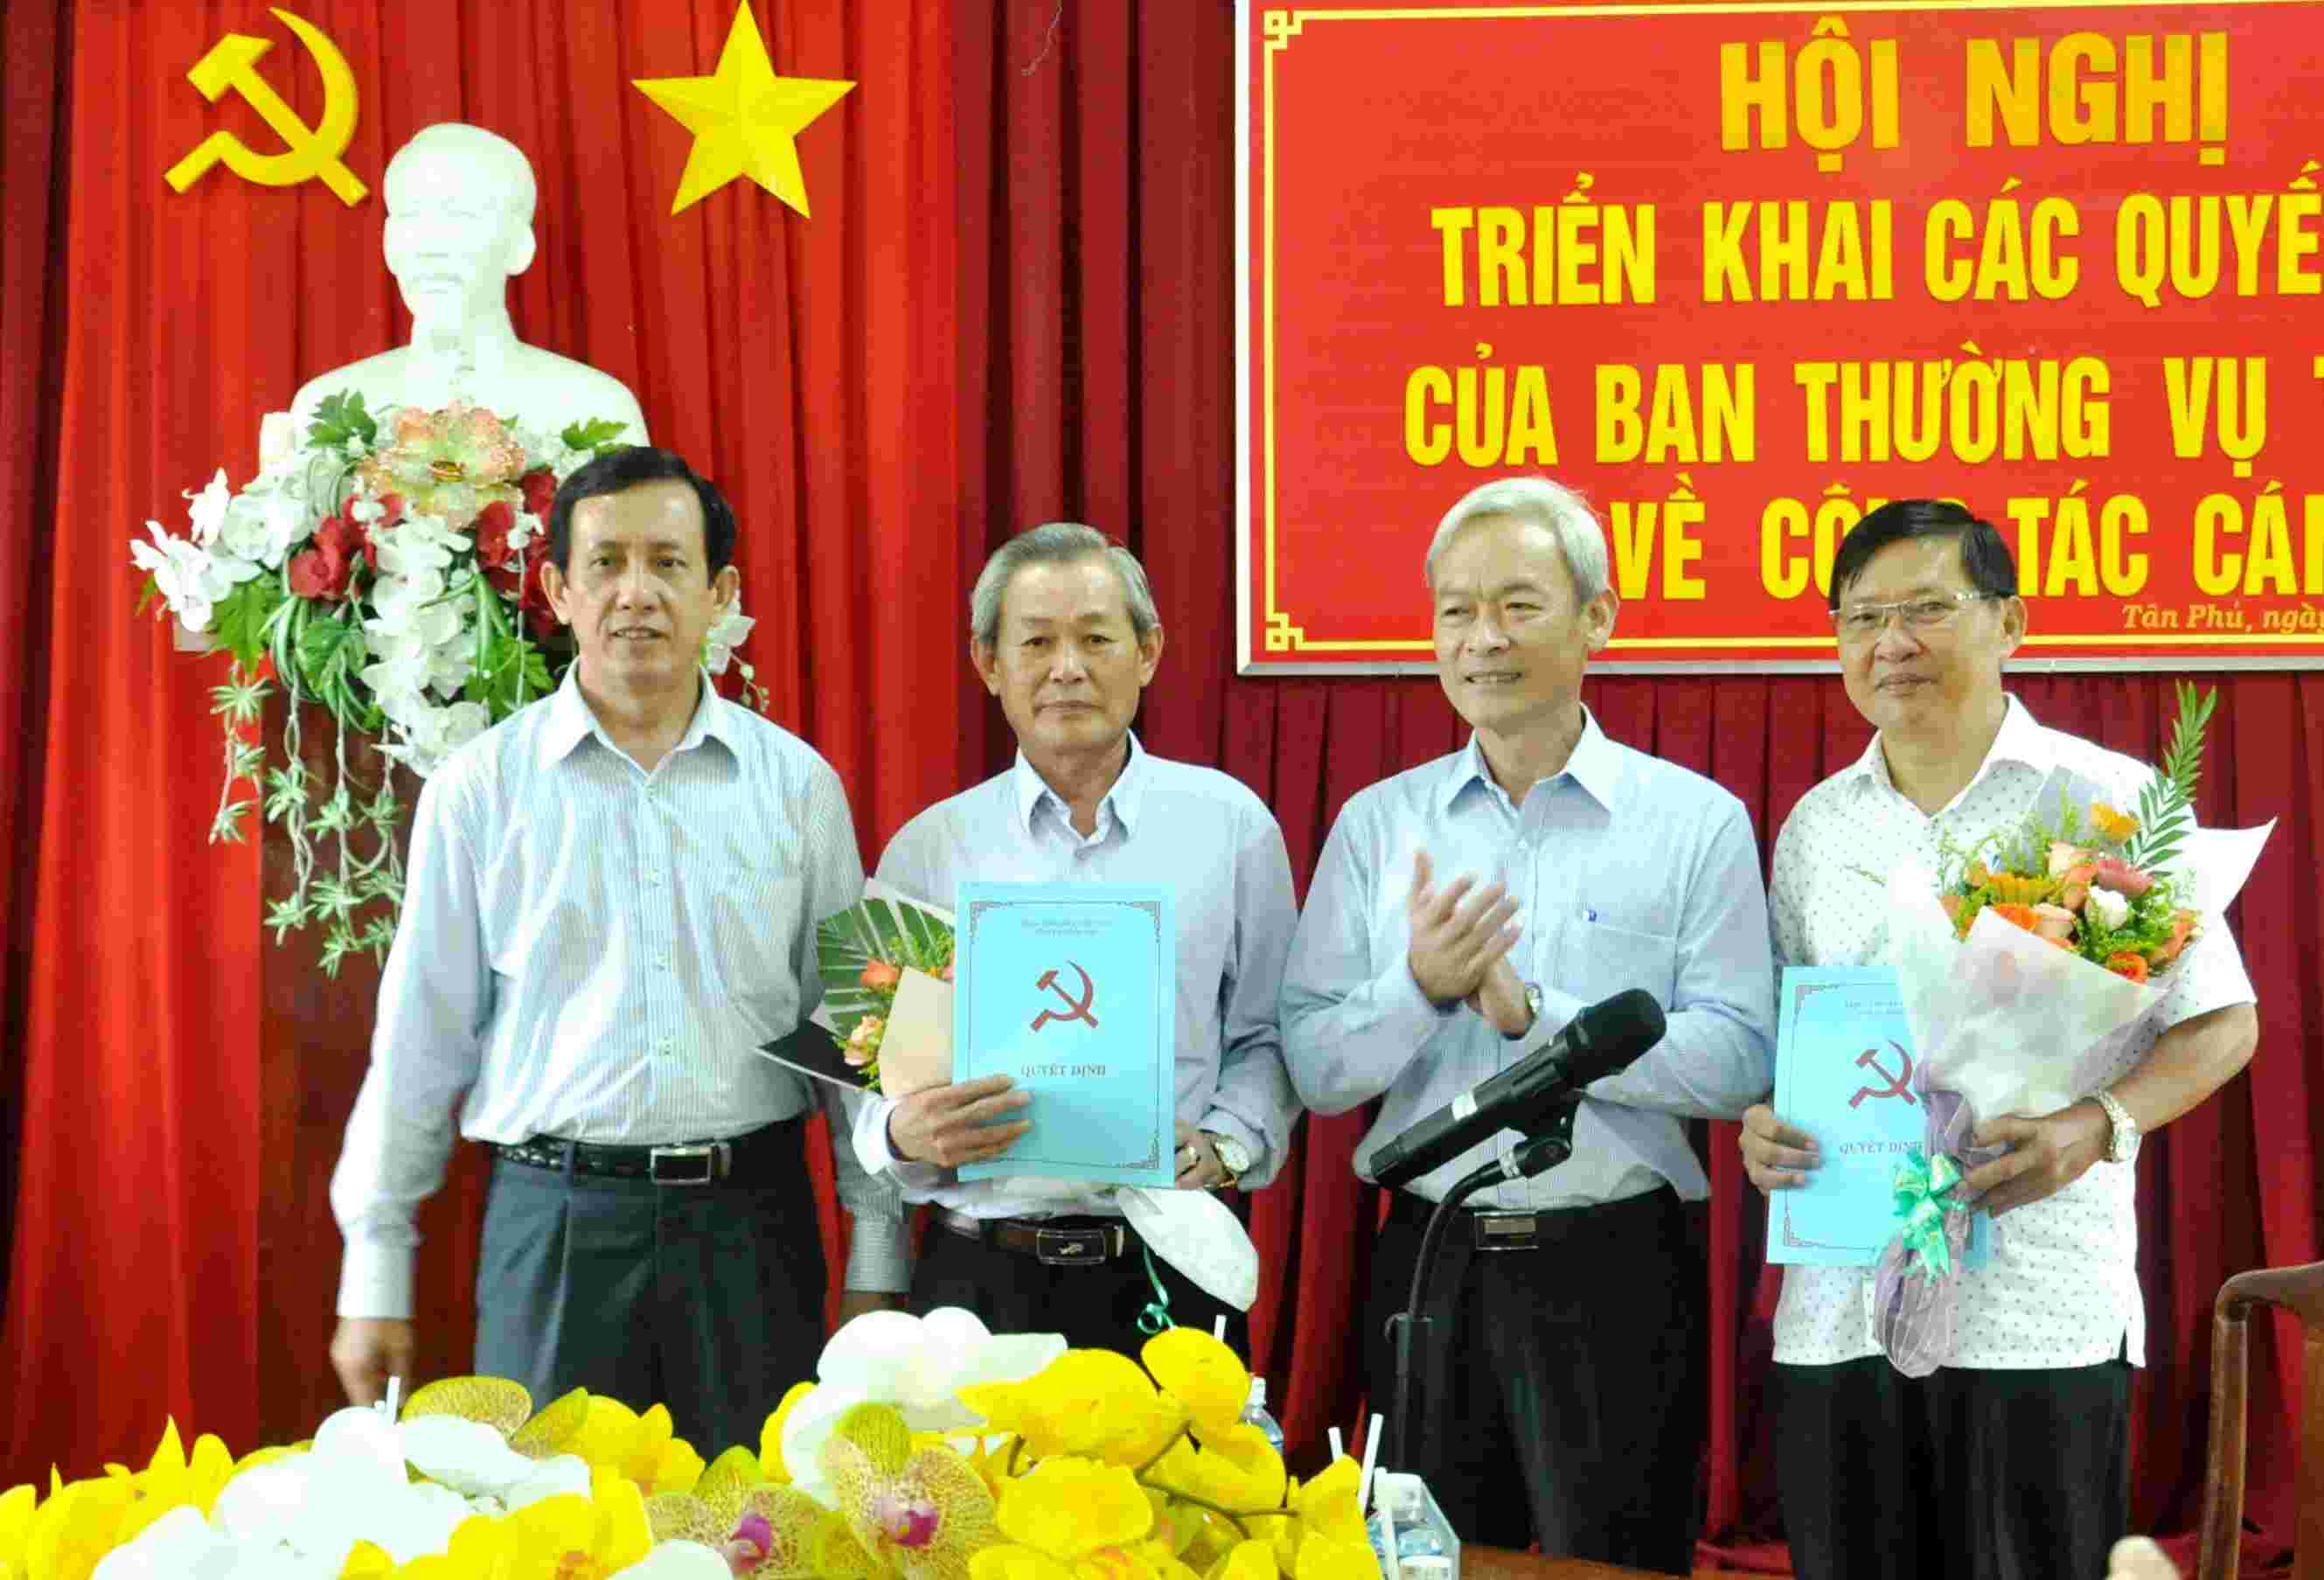 Lãnh đạo Tỉnh ủy trao Quyết định điều động cho các đồng chí Trần Bá Đạt và đồng chí Nguyễn Trung Thành.jpg